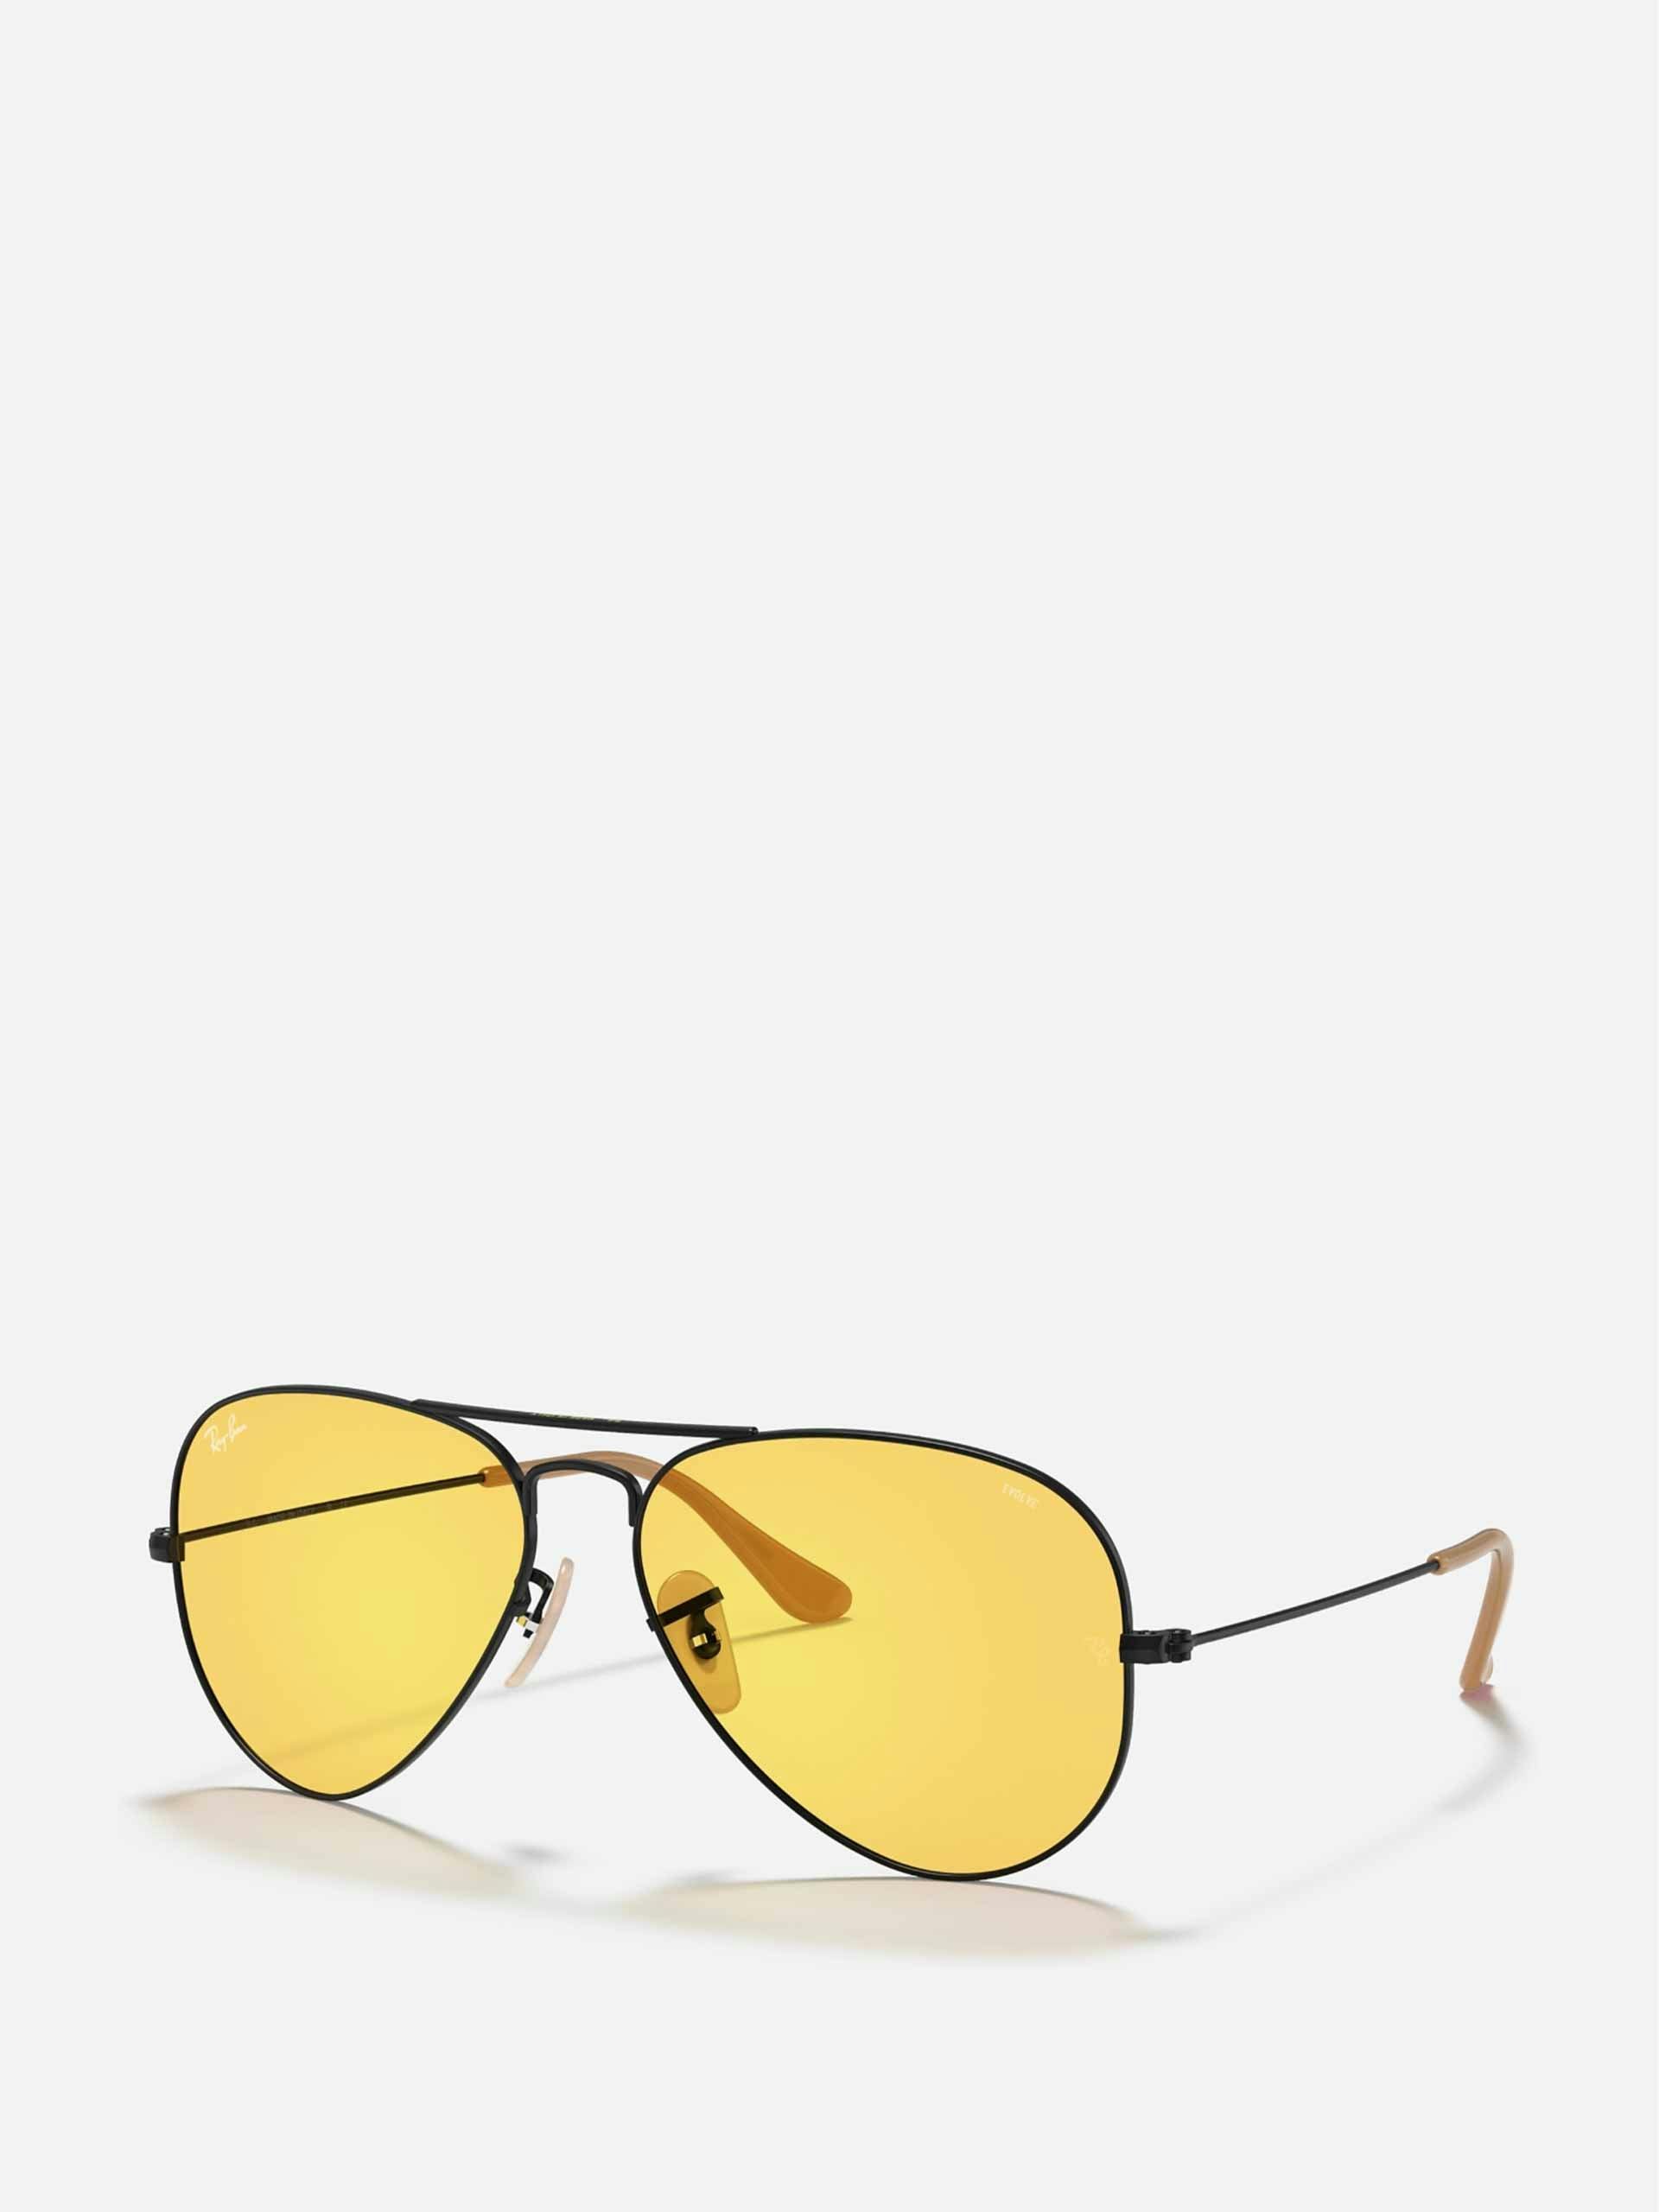 Yellow aviator sunglasses